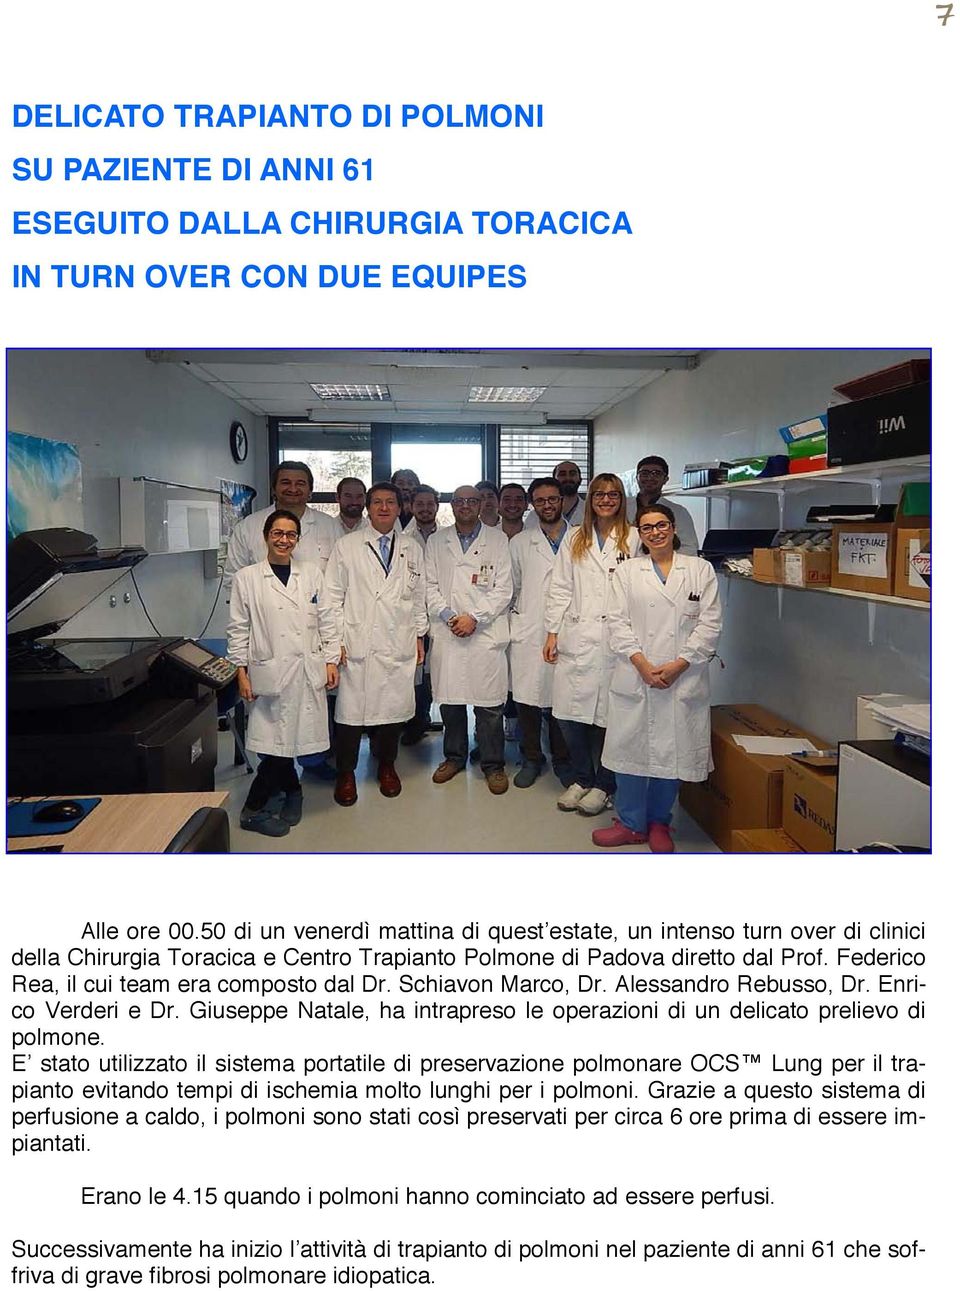 Schiavon Marco, Dr. Alessandro Rebusso, Dr. Enrico Verderi e Dr. Giuseppe Natale, ha intrapreso le operazioni di un delicato prelievo di polmone.